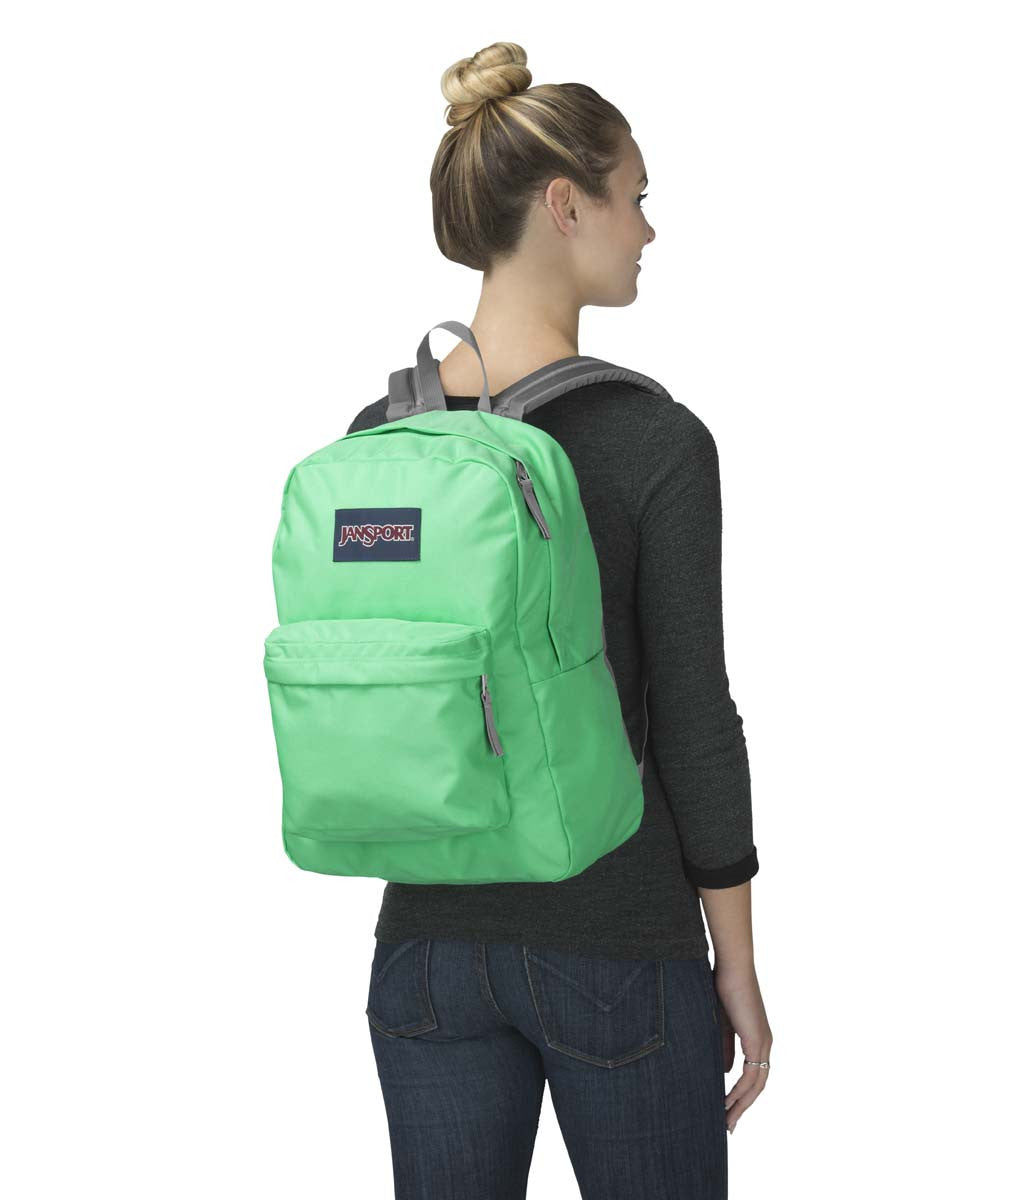 seafoam green backpack